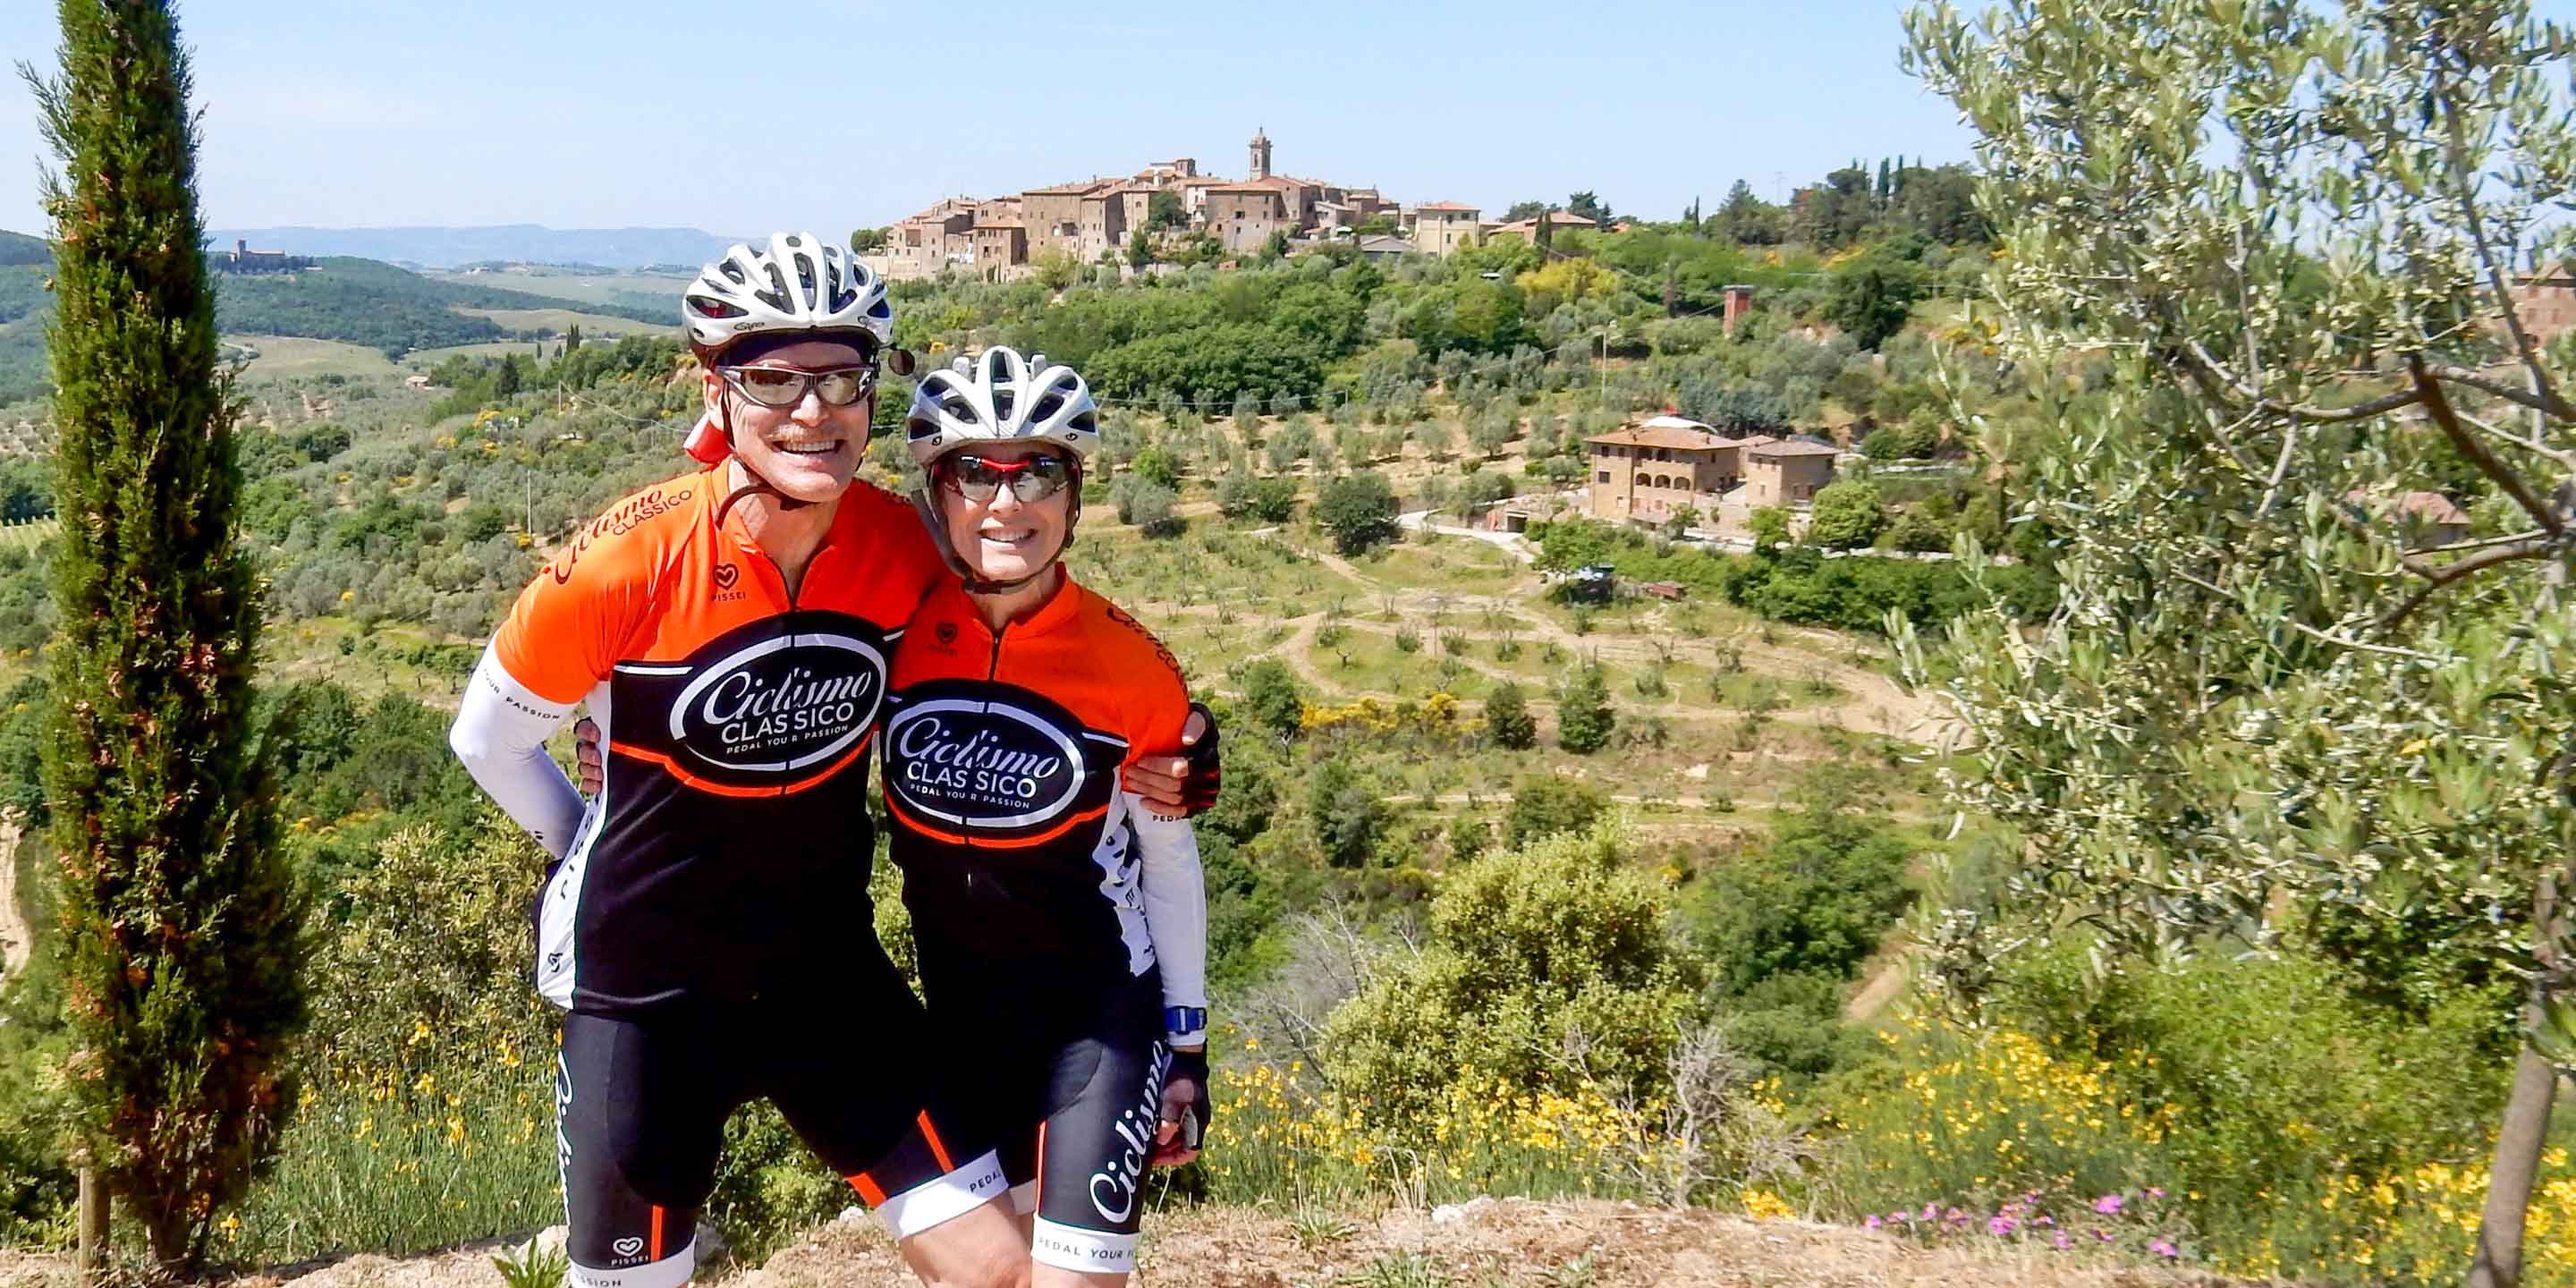 Biker couple smiling in Toscana Verde